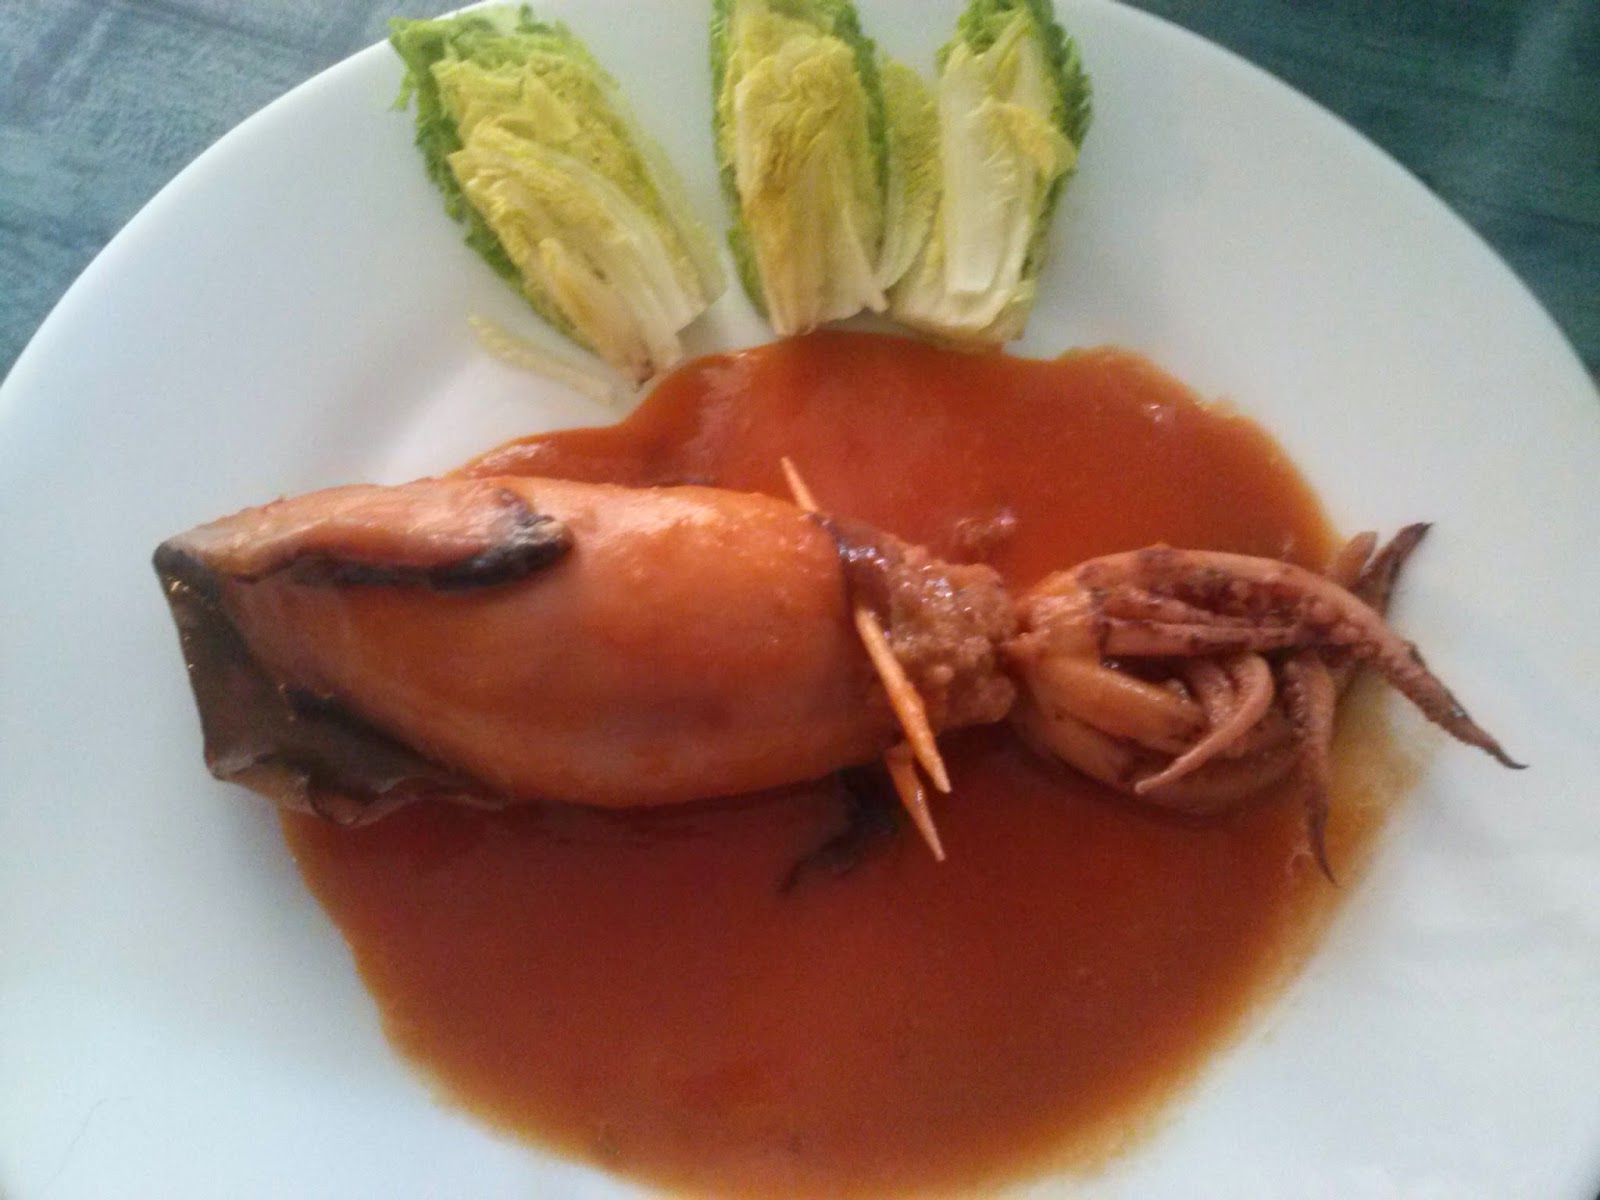 http://anaverita.blogspot.com.es/2014/08/calamares-rellenos-en-salsa.html